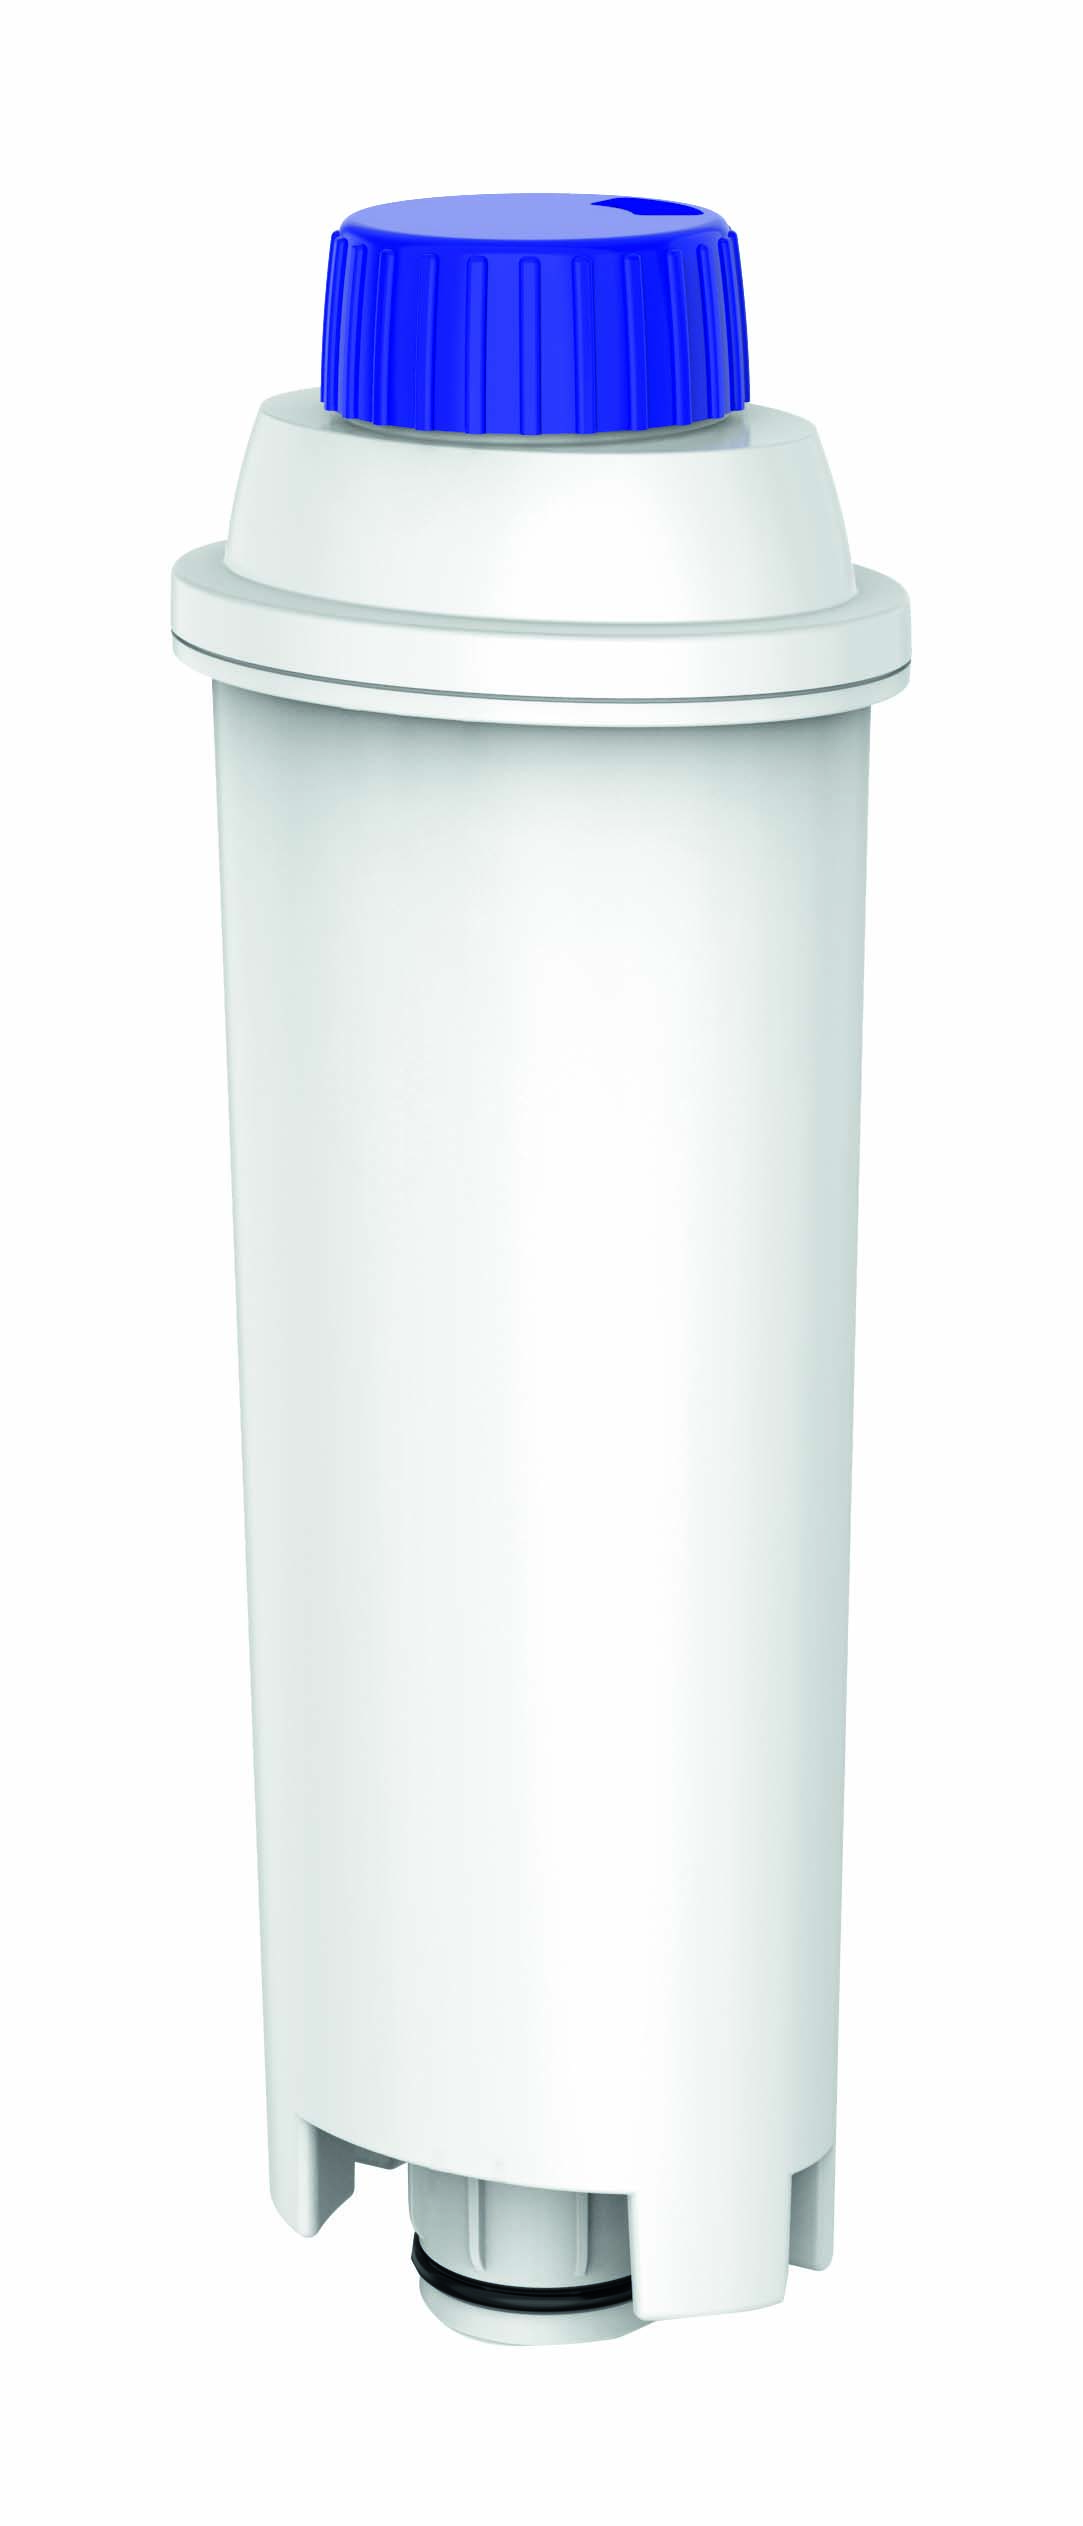 einsetzbar Wasserfilter DLS C002 KOENIC KWF-003-D DELONGHI Weiß statt